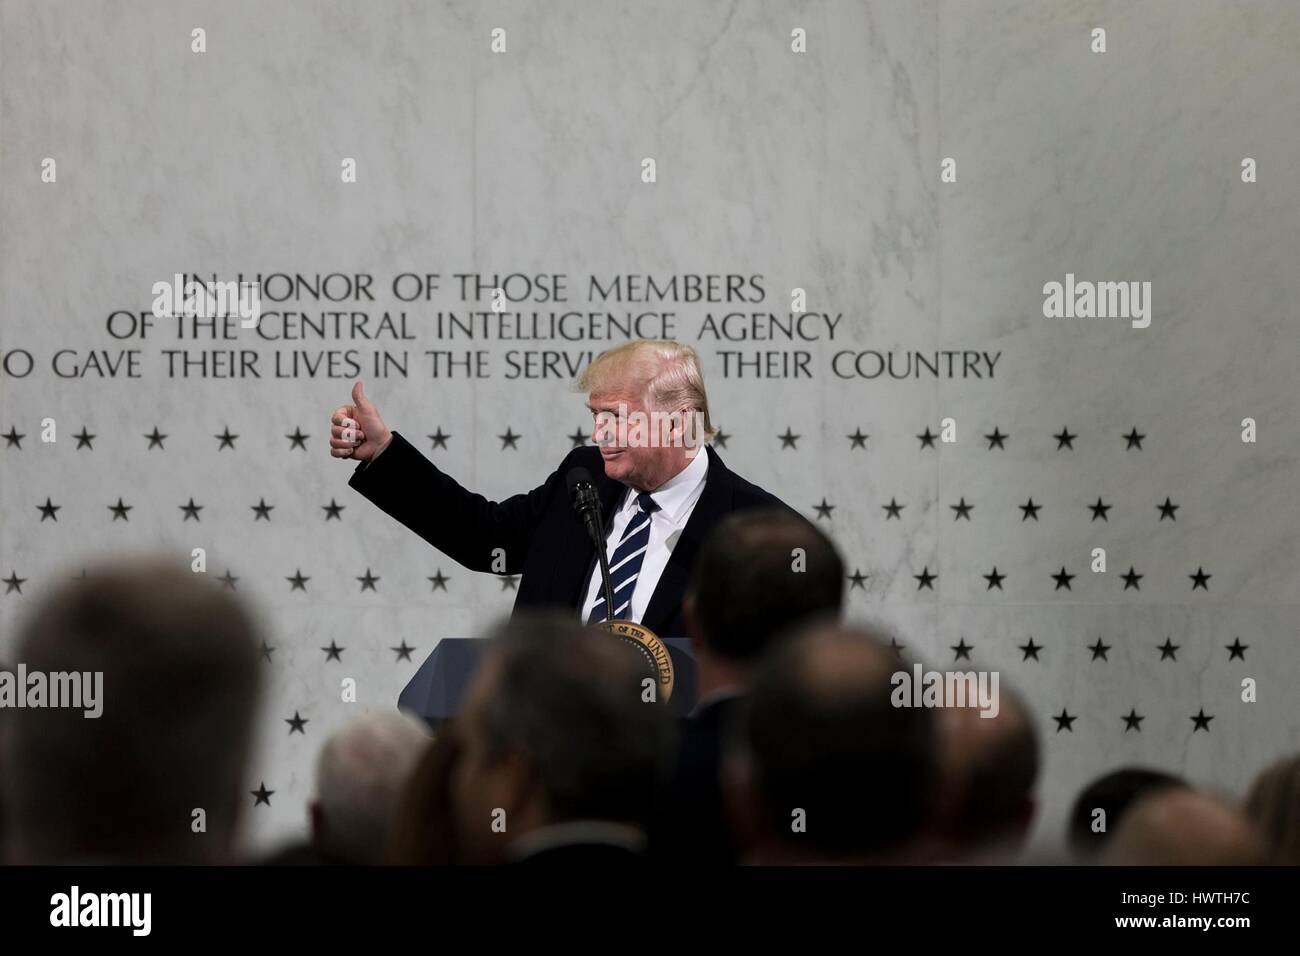 US-Präsident Donald Trump verleiht eine Daumen-hoch stand vor der CIA Memorial Wall während Bemerkungen Mitarbeiter am Hauptsitz Central Intelligence Agency 21. Januar 2017 in Langley, Virginia. Stockfoto